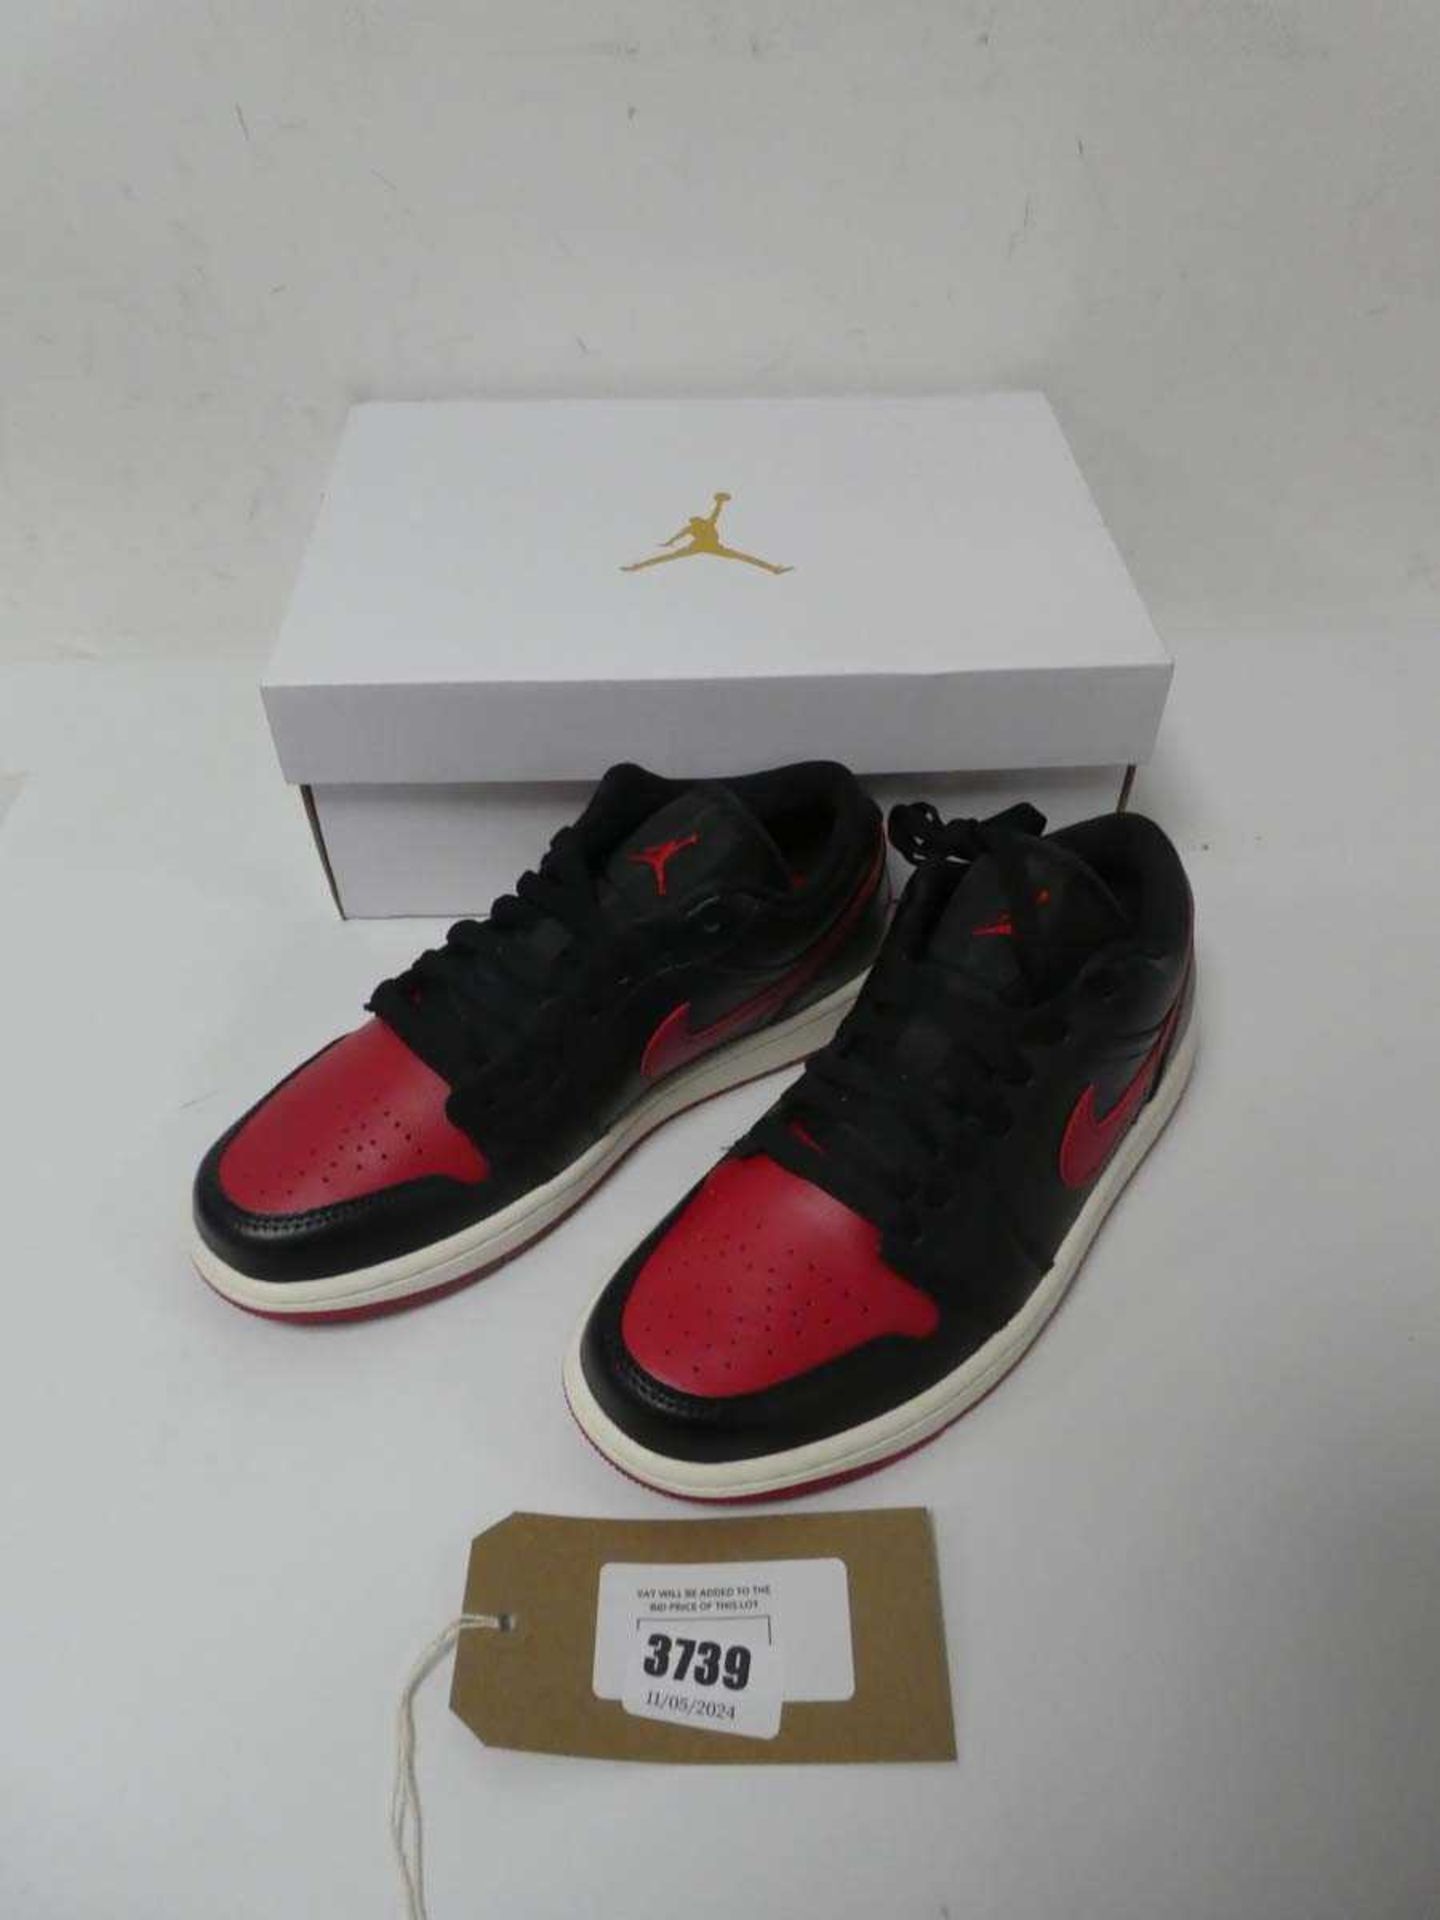 +VAT Boxed pair of ladies Nike Air Jordan 1 low trainers, black and red, UK 5